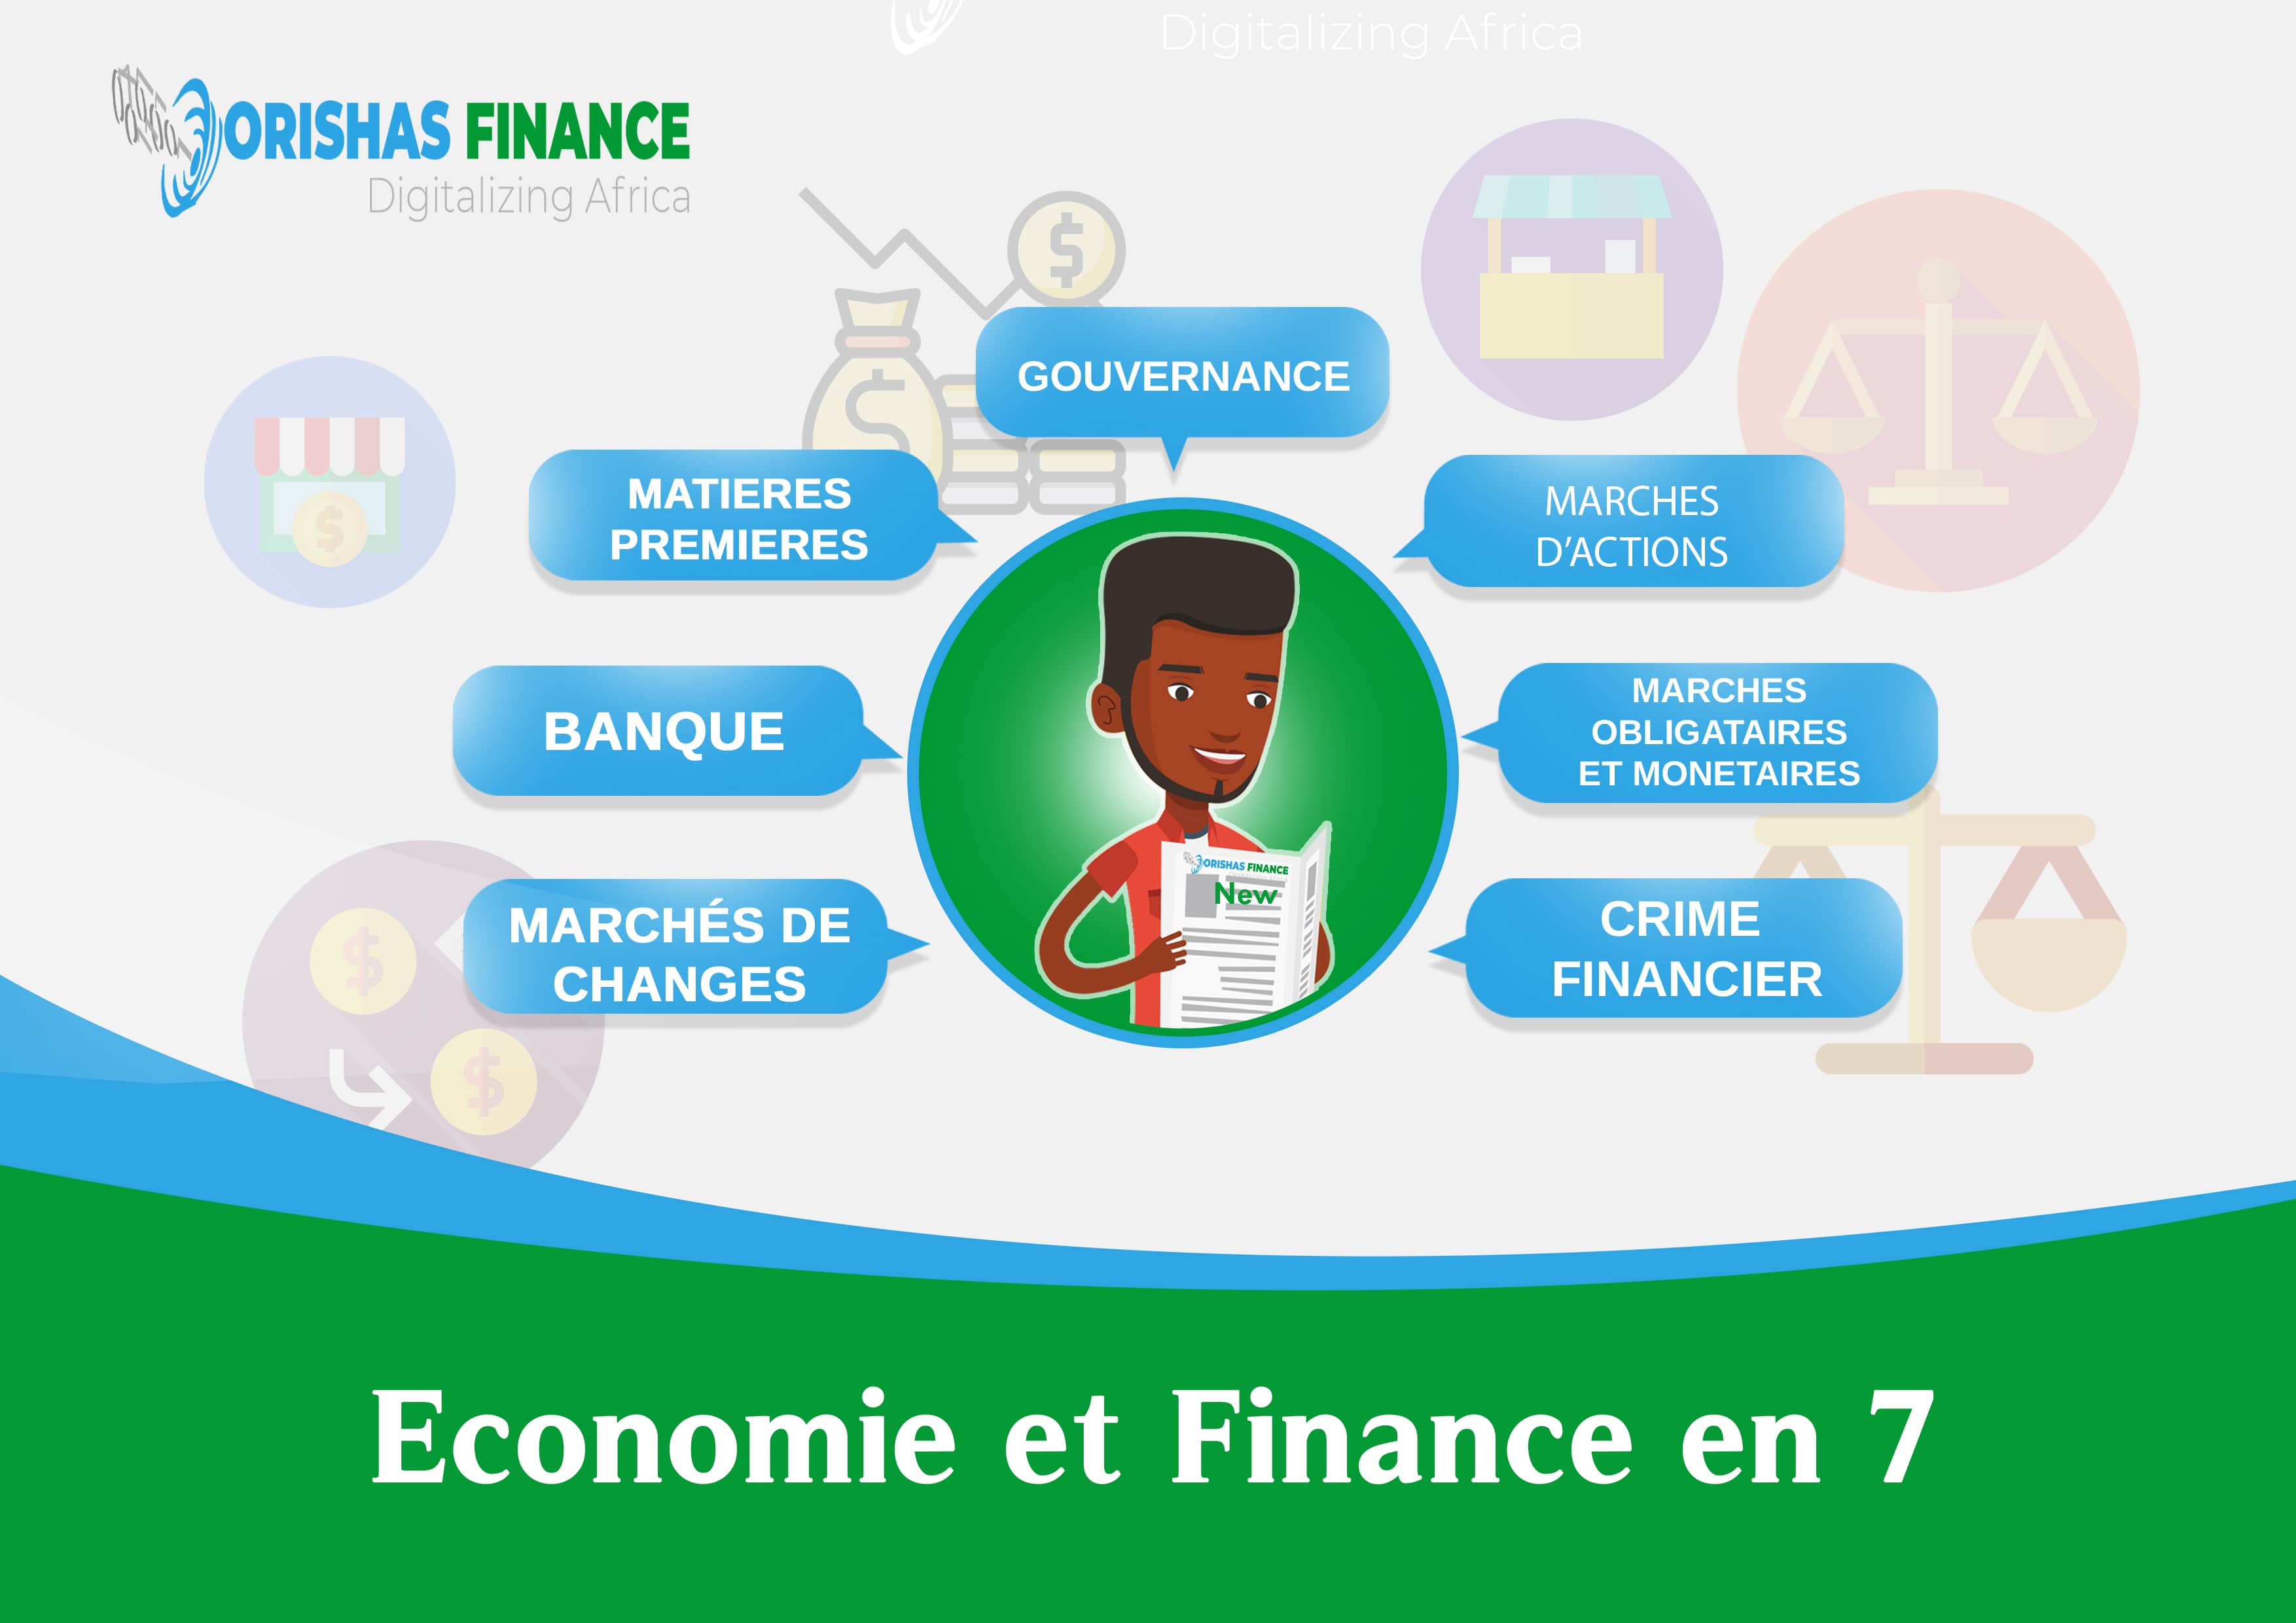  Economie et finance en 7 du 19 au 23 Avril 2021 